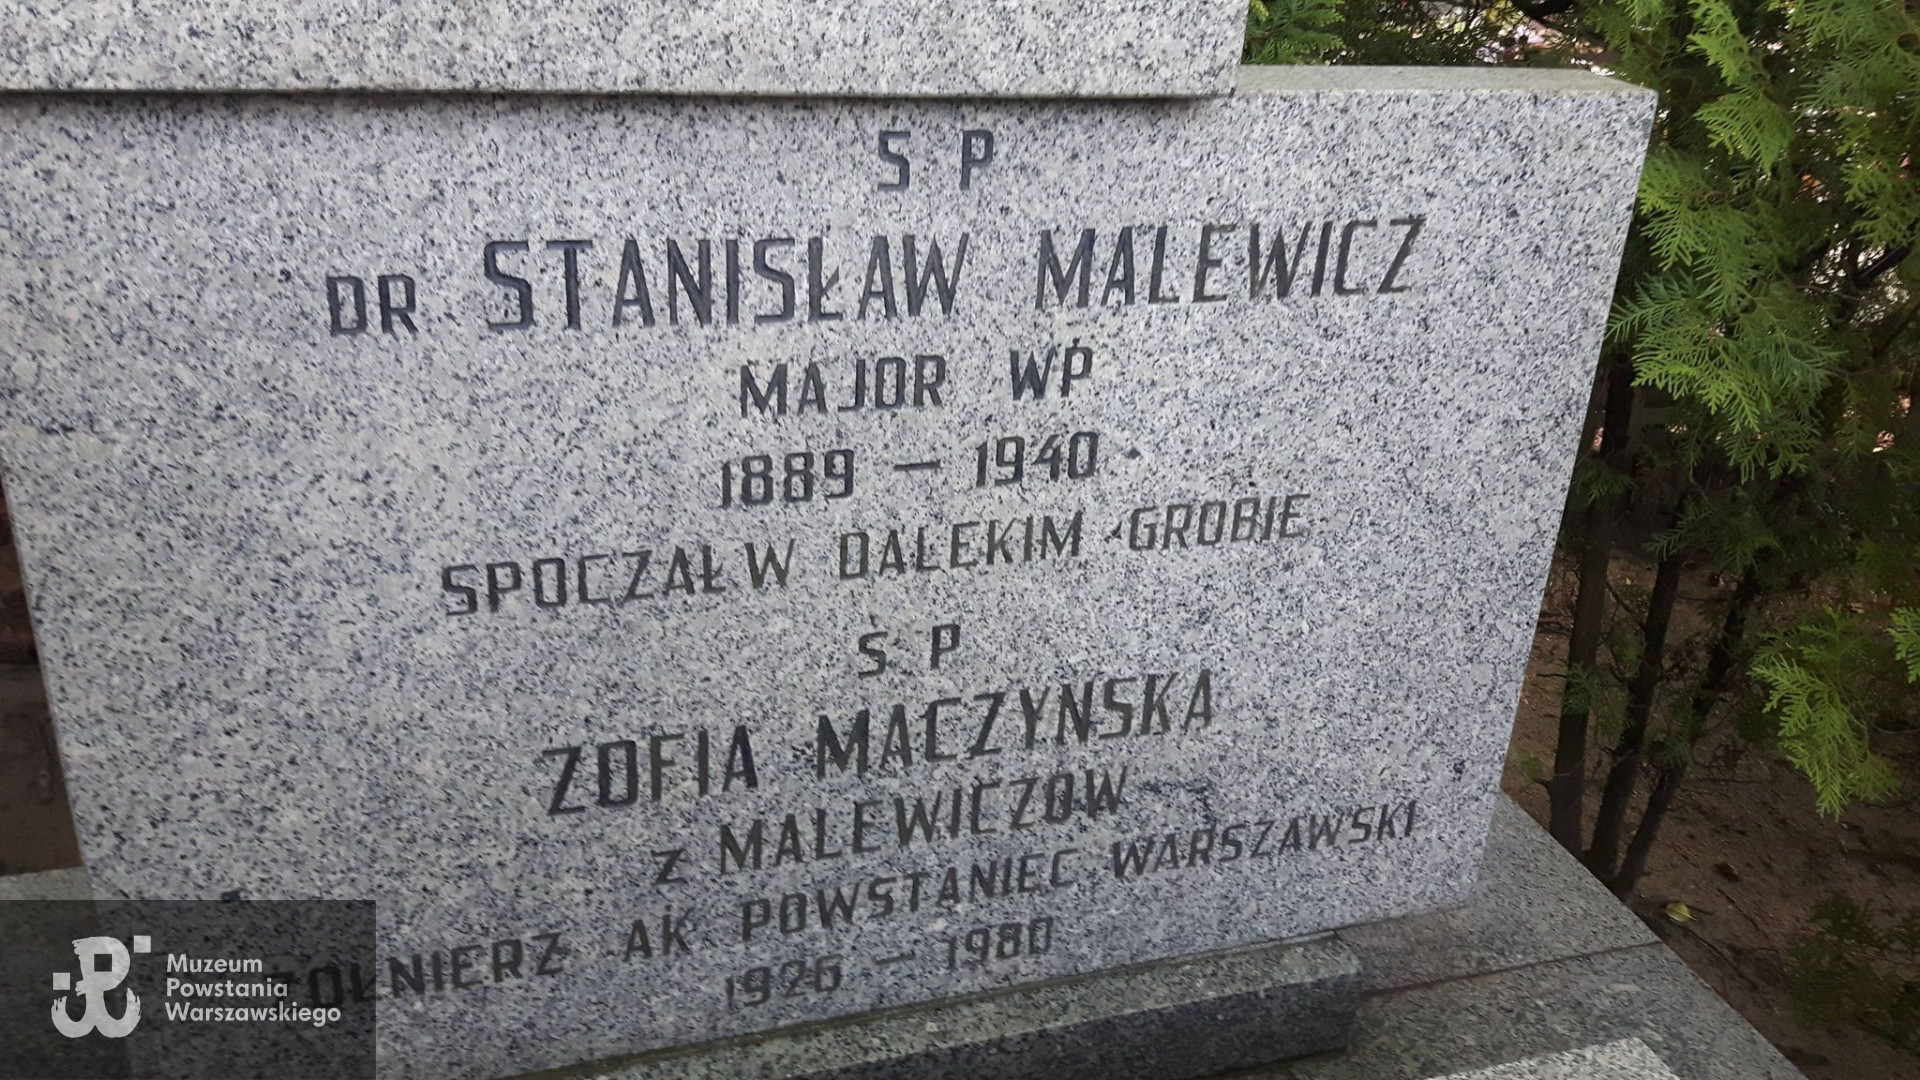 Cmentarz Grabiszyński we Wrocławiu. Fot. udostępniła p. Beata Trzcińska